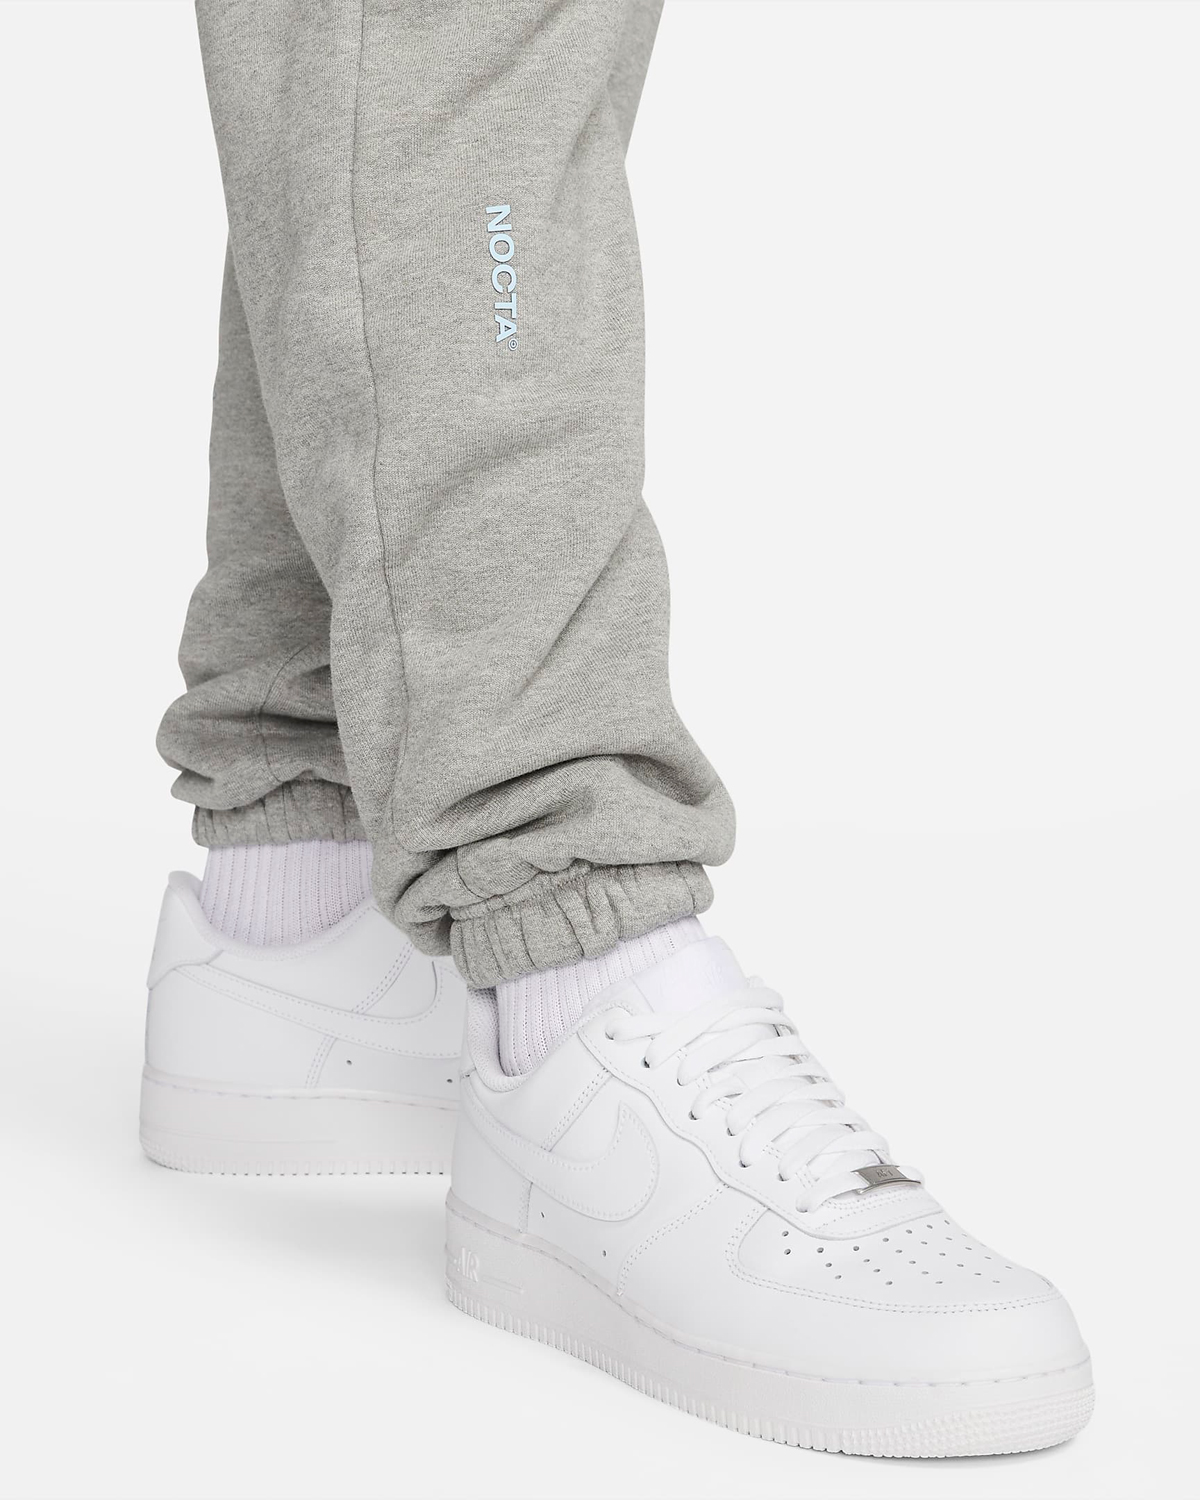 Drake-NOCTA-Nike-Pants-Grey-4